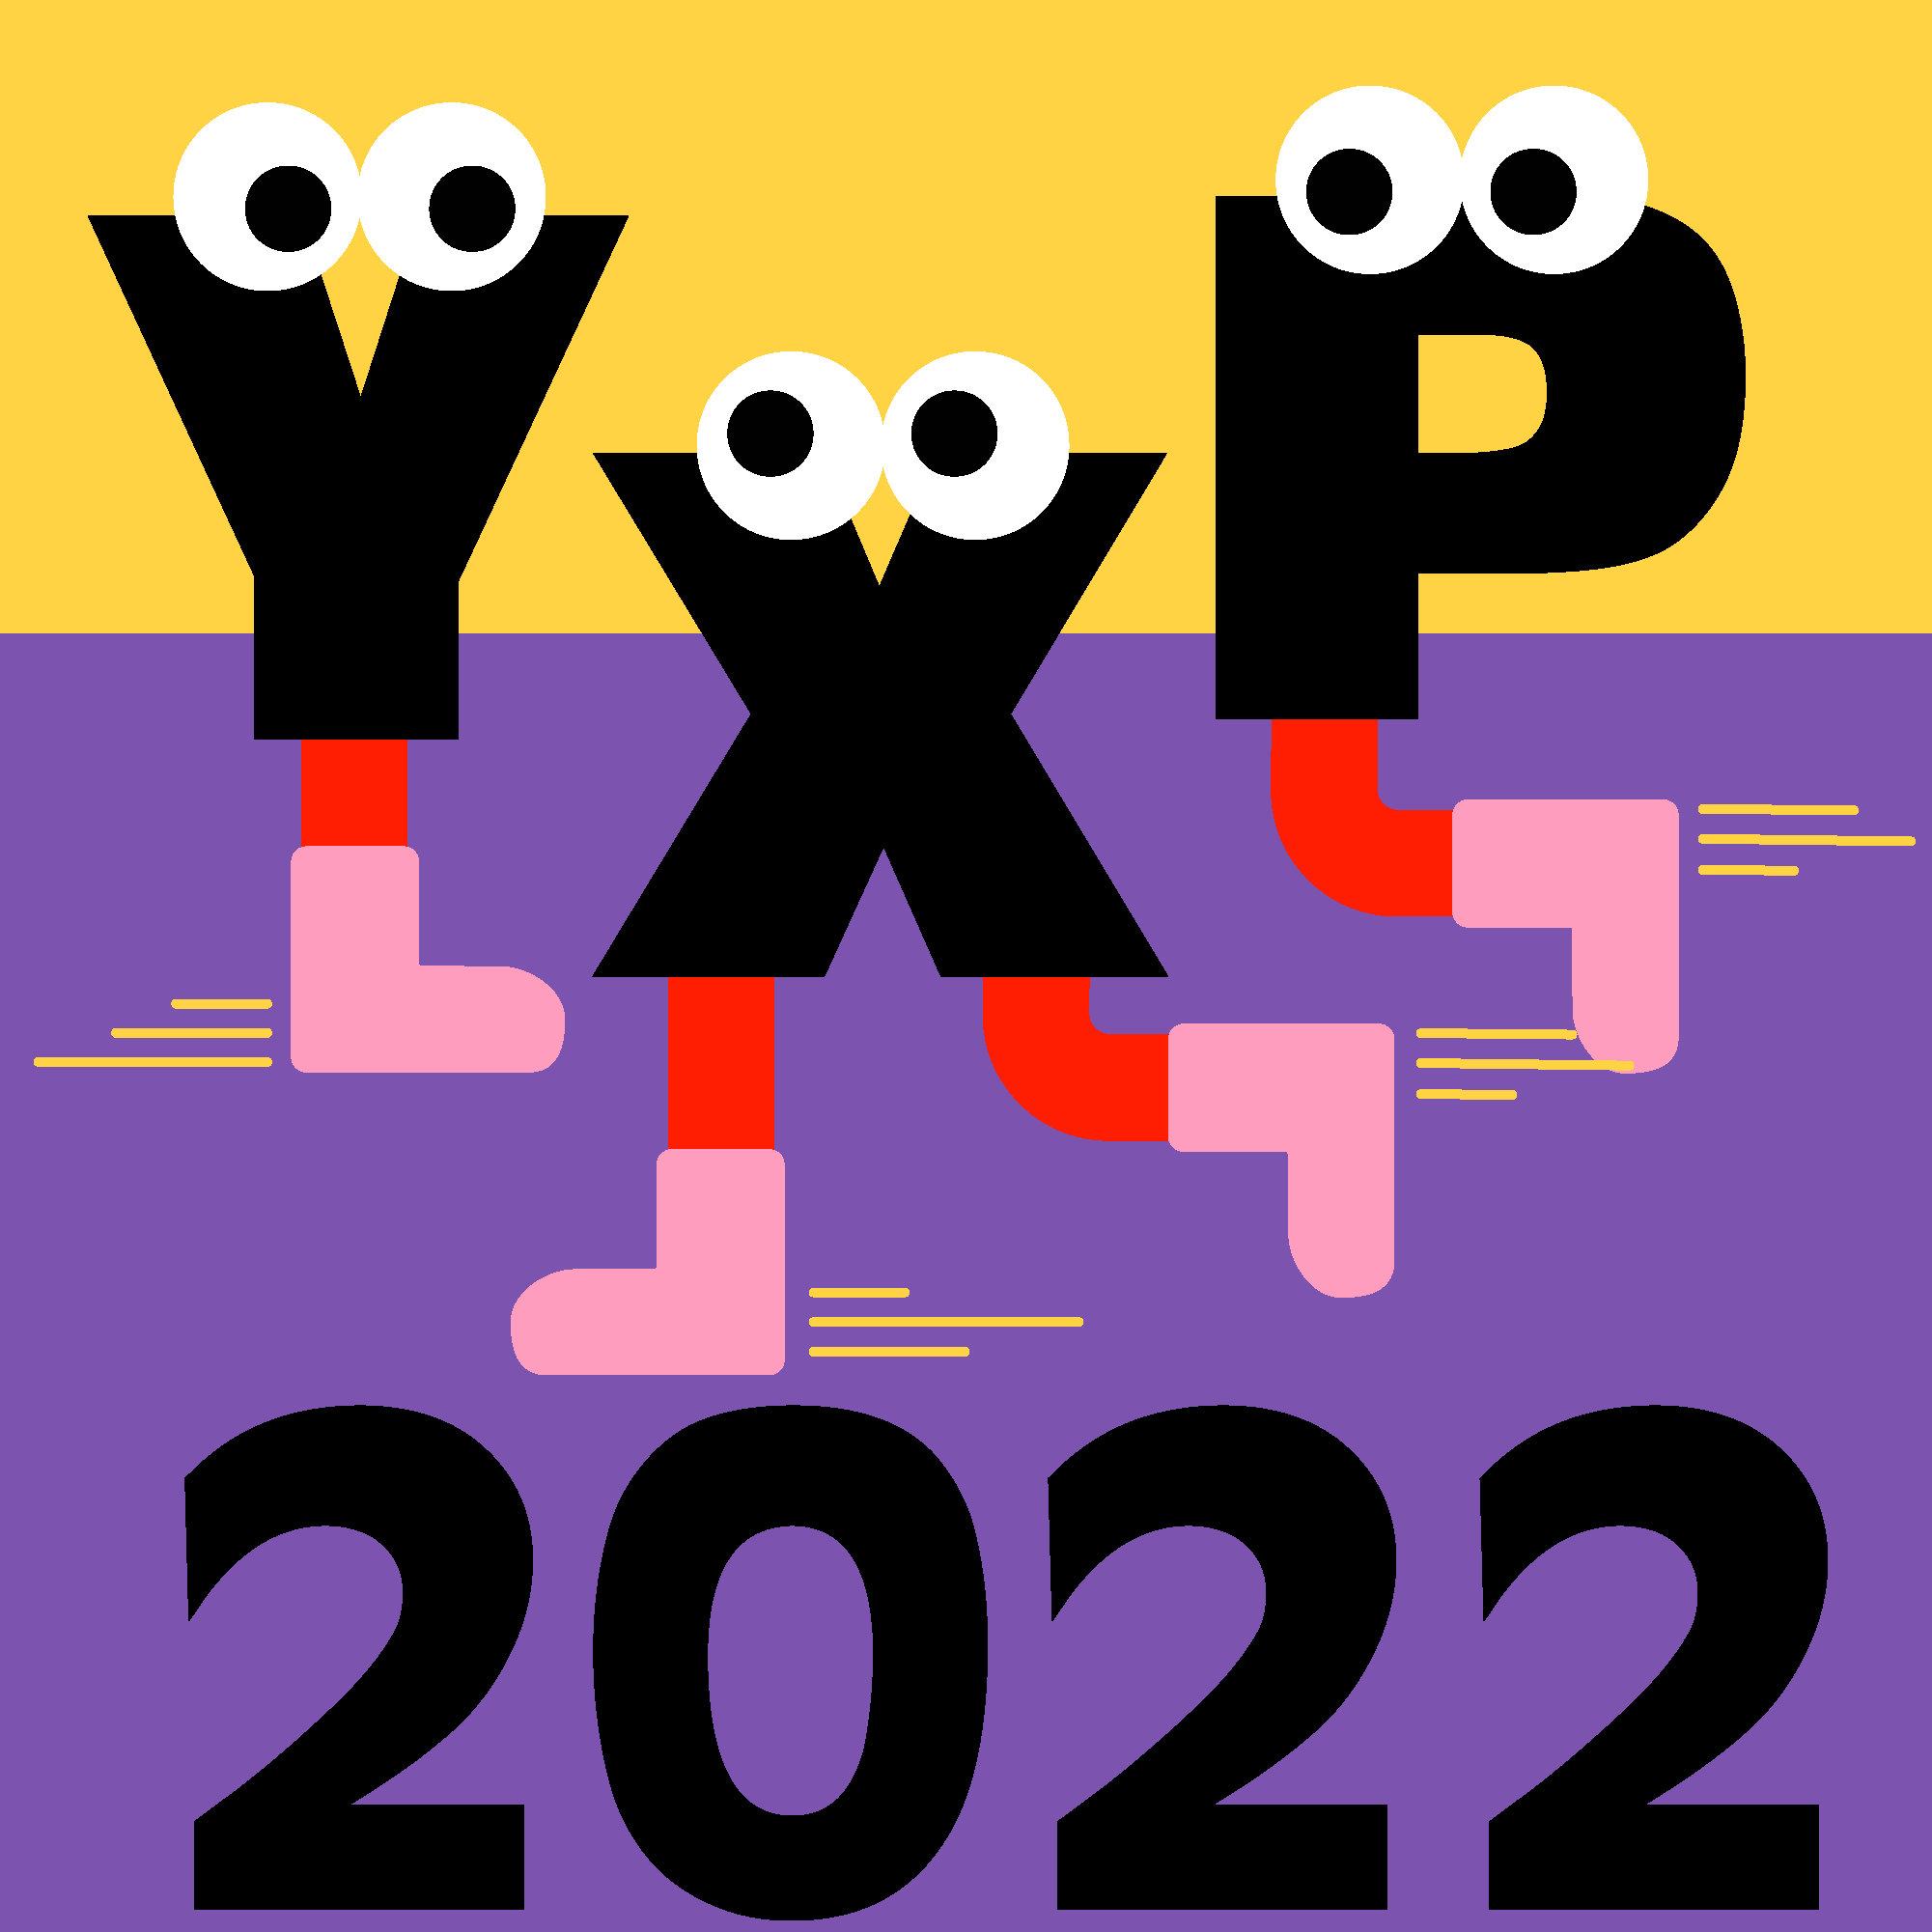 YXP 2022